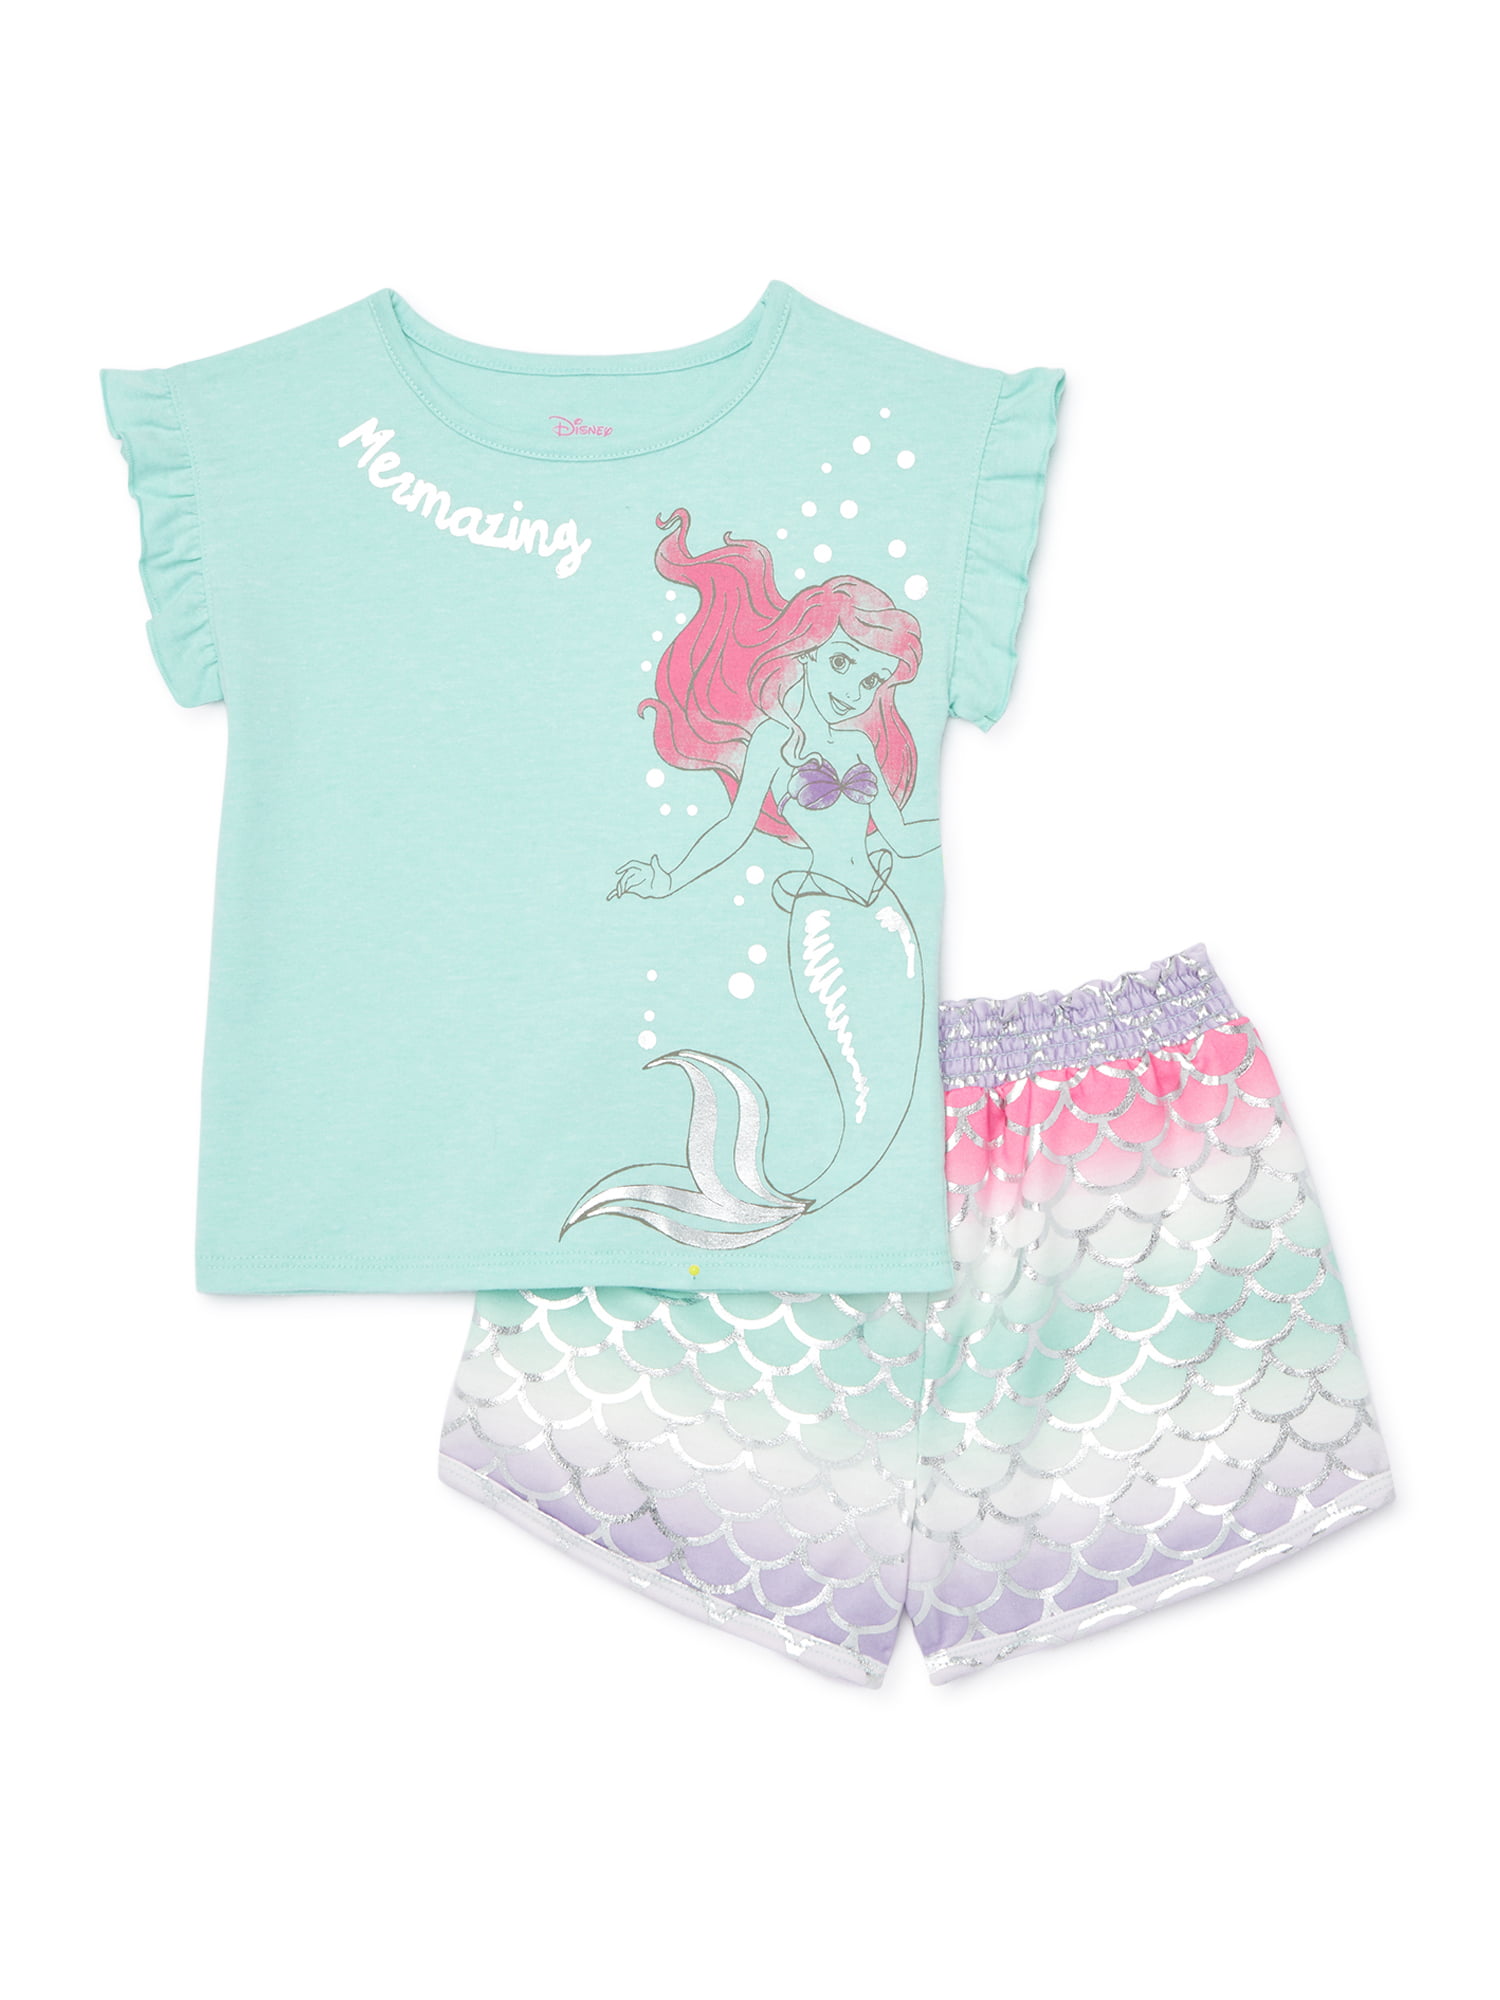 Mermaid Shirt and Shorts Set Mermaid Trio Applique Shorts Set Mermaid Applique